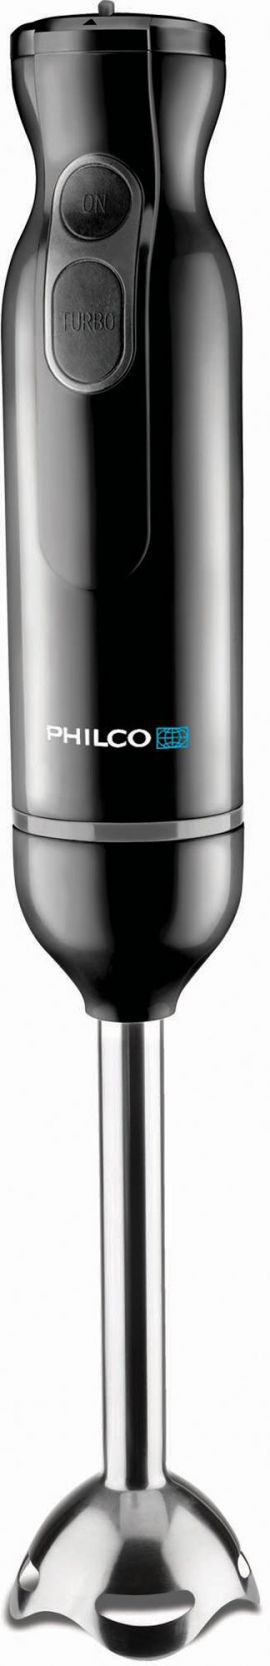 Blender PHILCO PHHB 6603 w MediaExpert